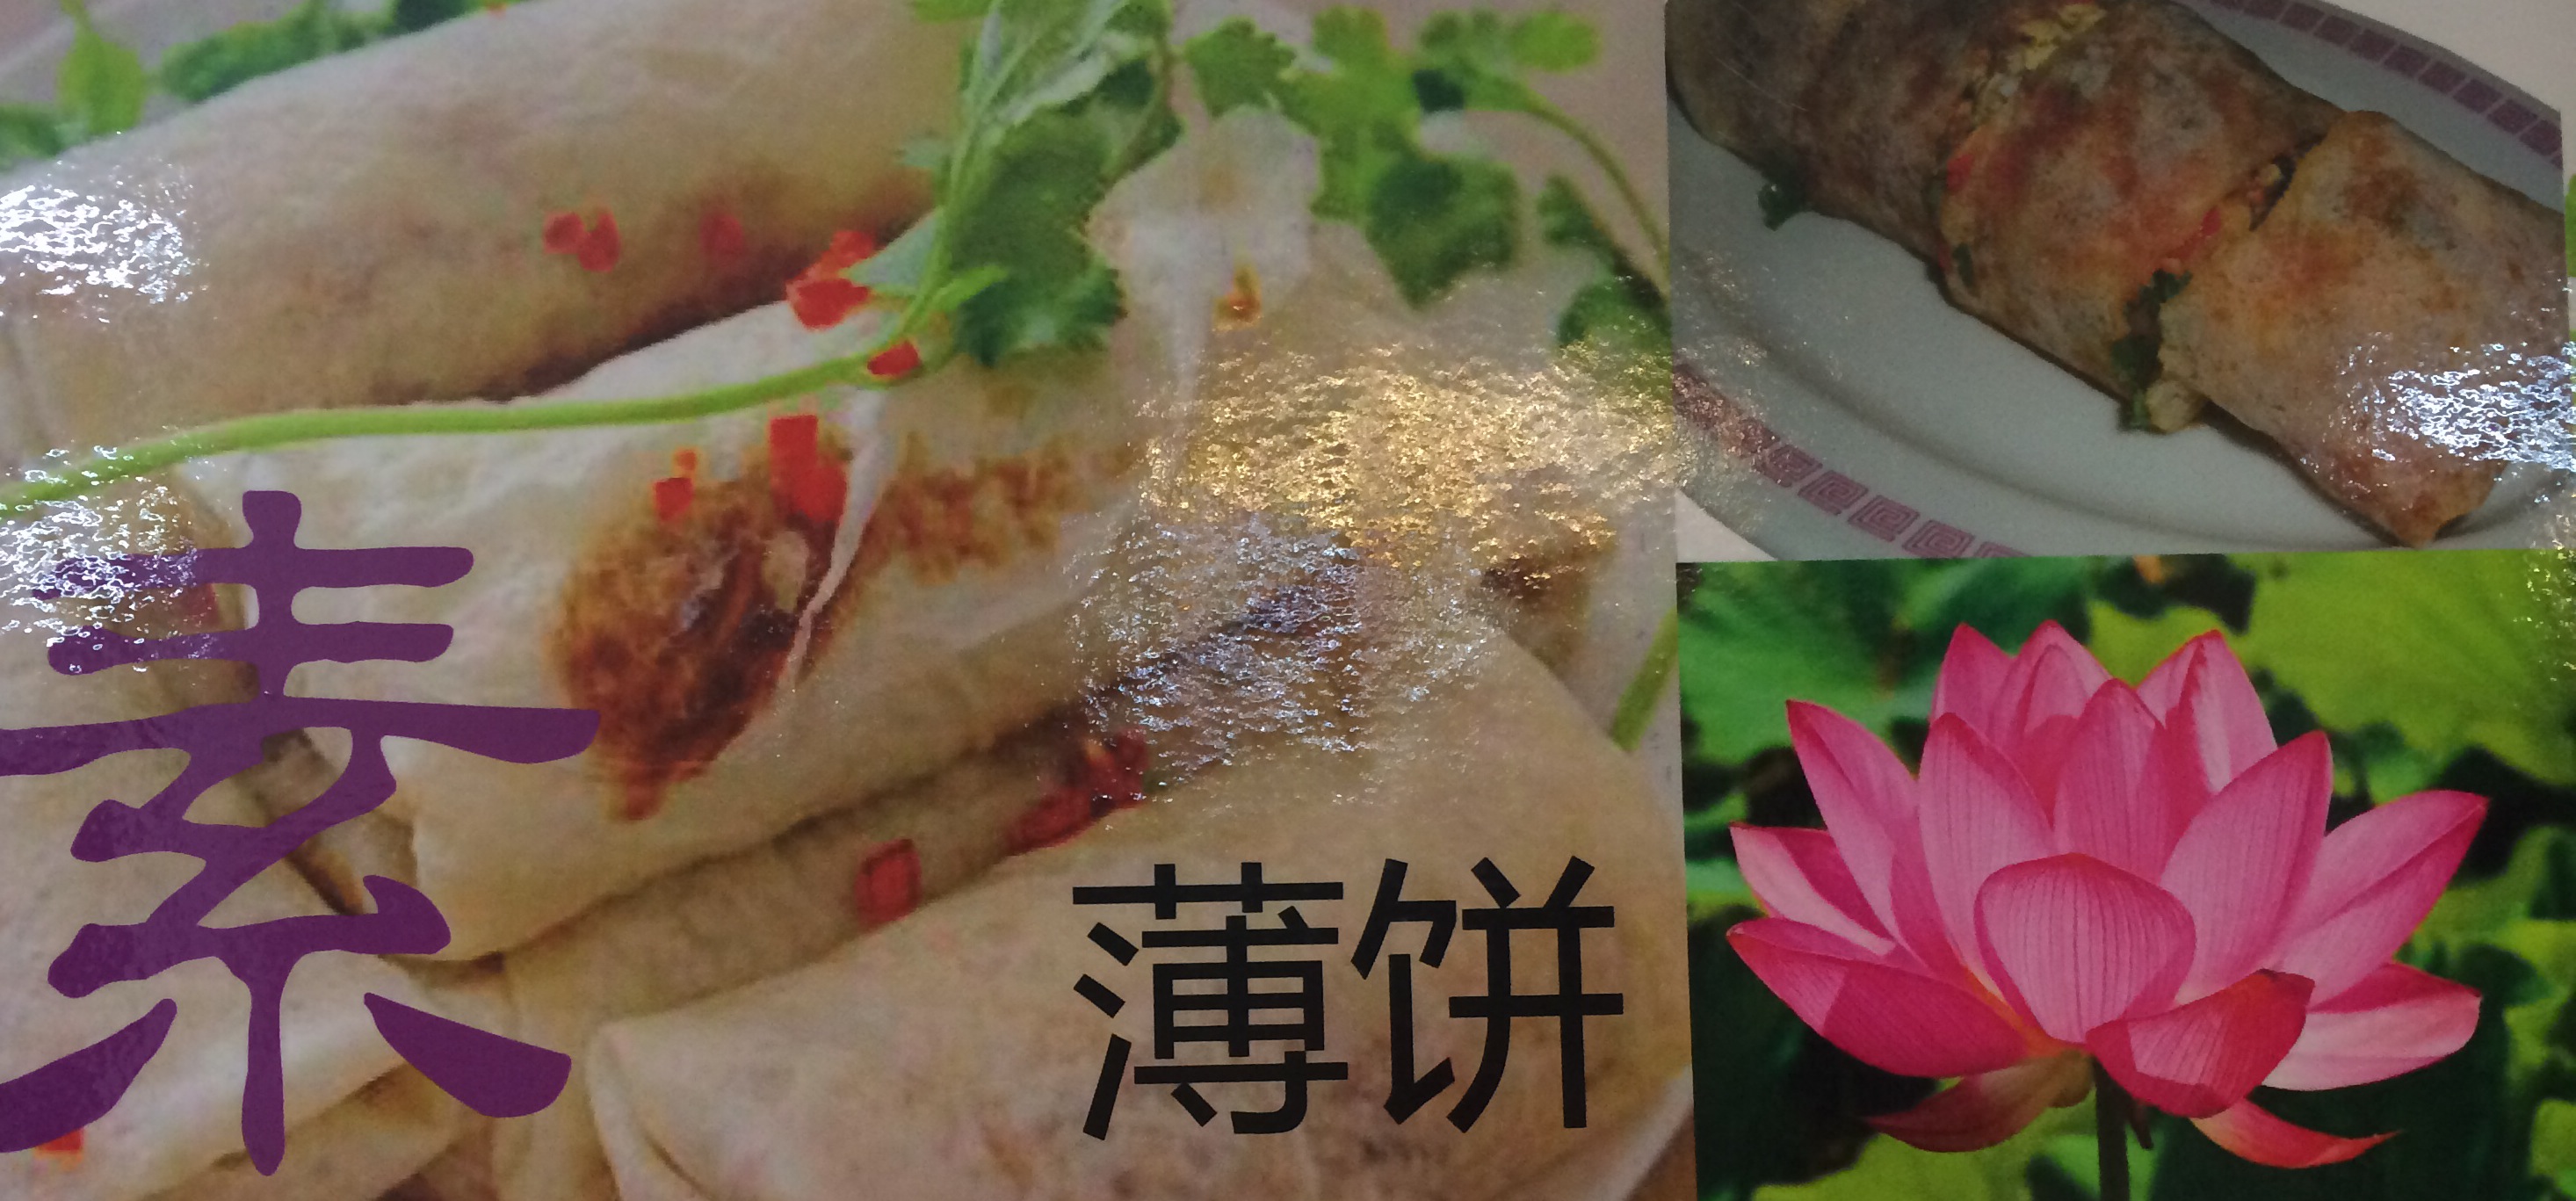 素薄饼 - 淡滨尼 Blk 828 咖啡店 (谢必安） | Singapore Vegetarian Food 新加坡素食